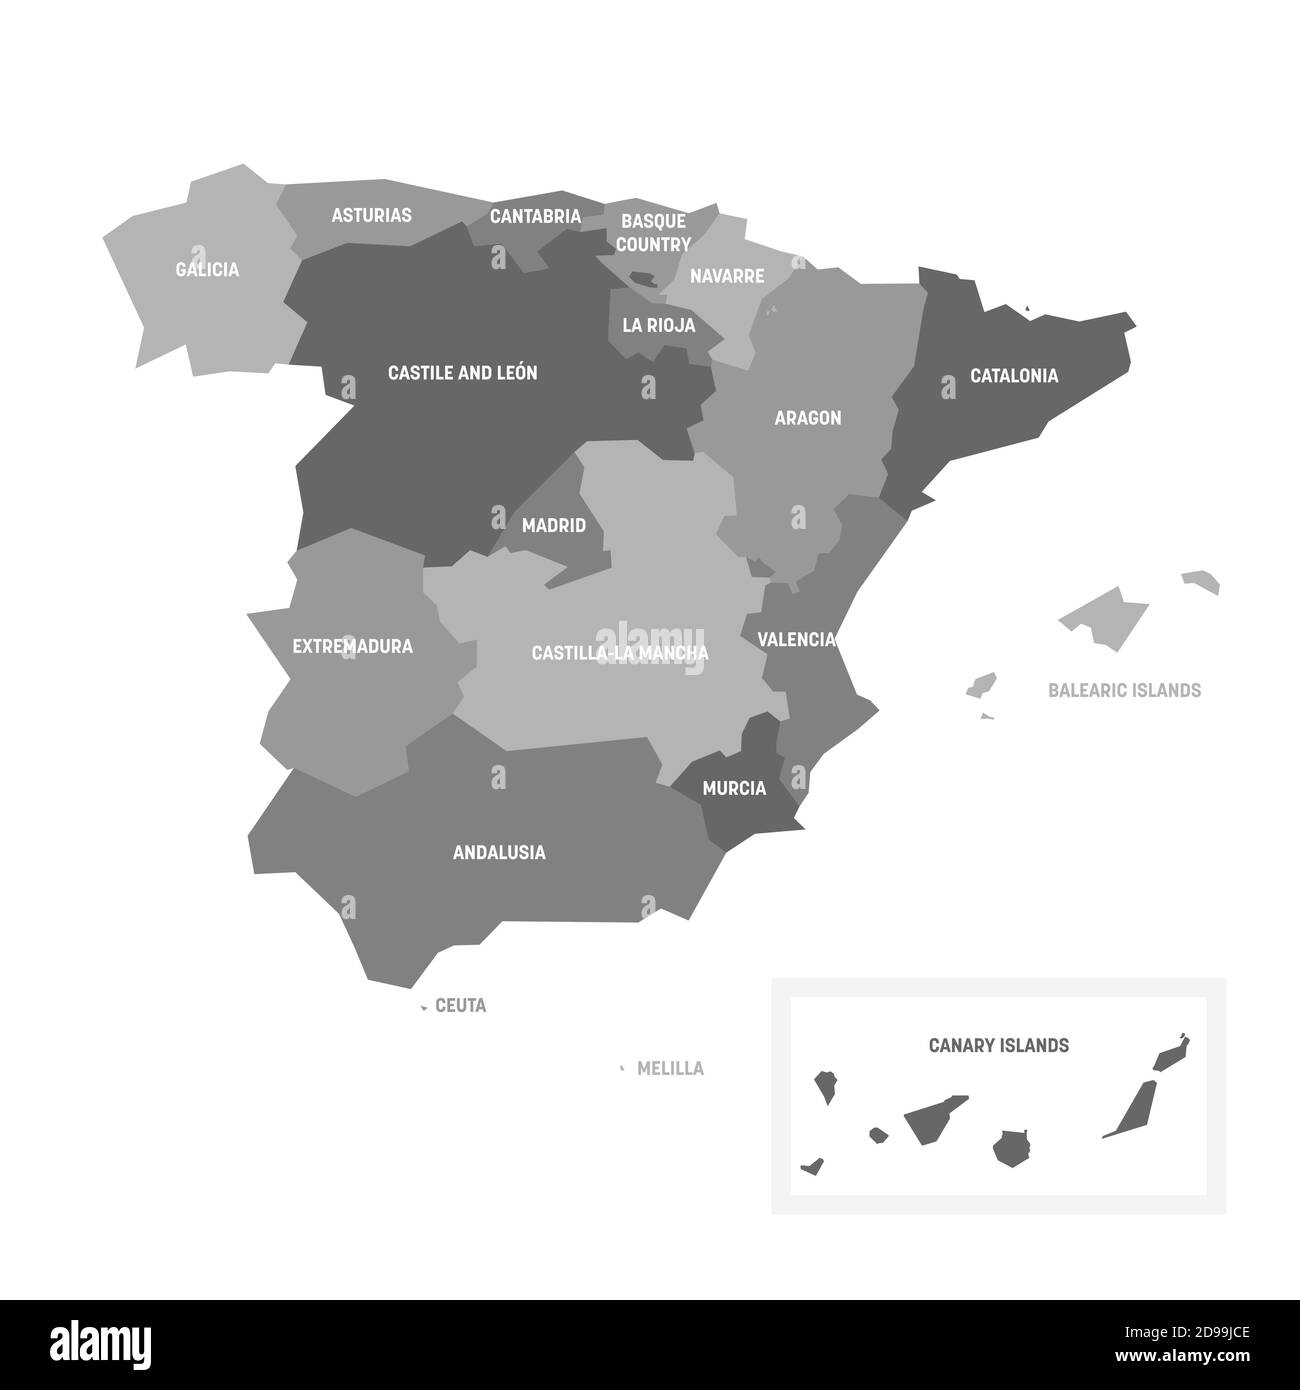 Mappa politica grigia della Spagna. Divisioni amministrative - comunità autonome. Semplice mappa vettoriale piatta con etichette. Illustrazione Vettoriale